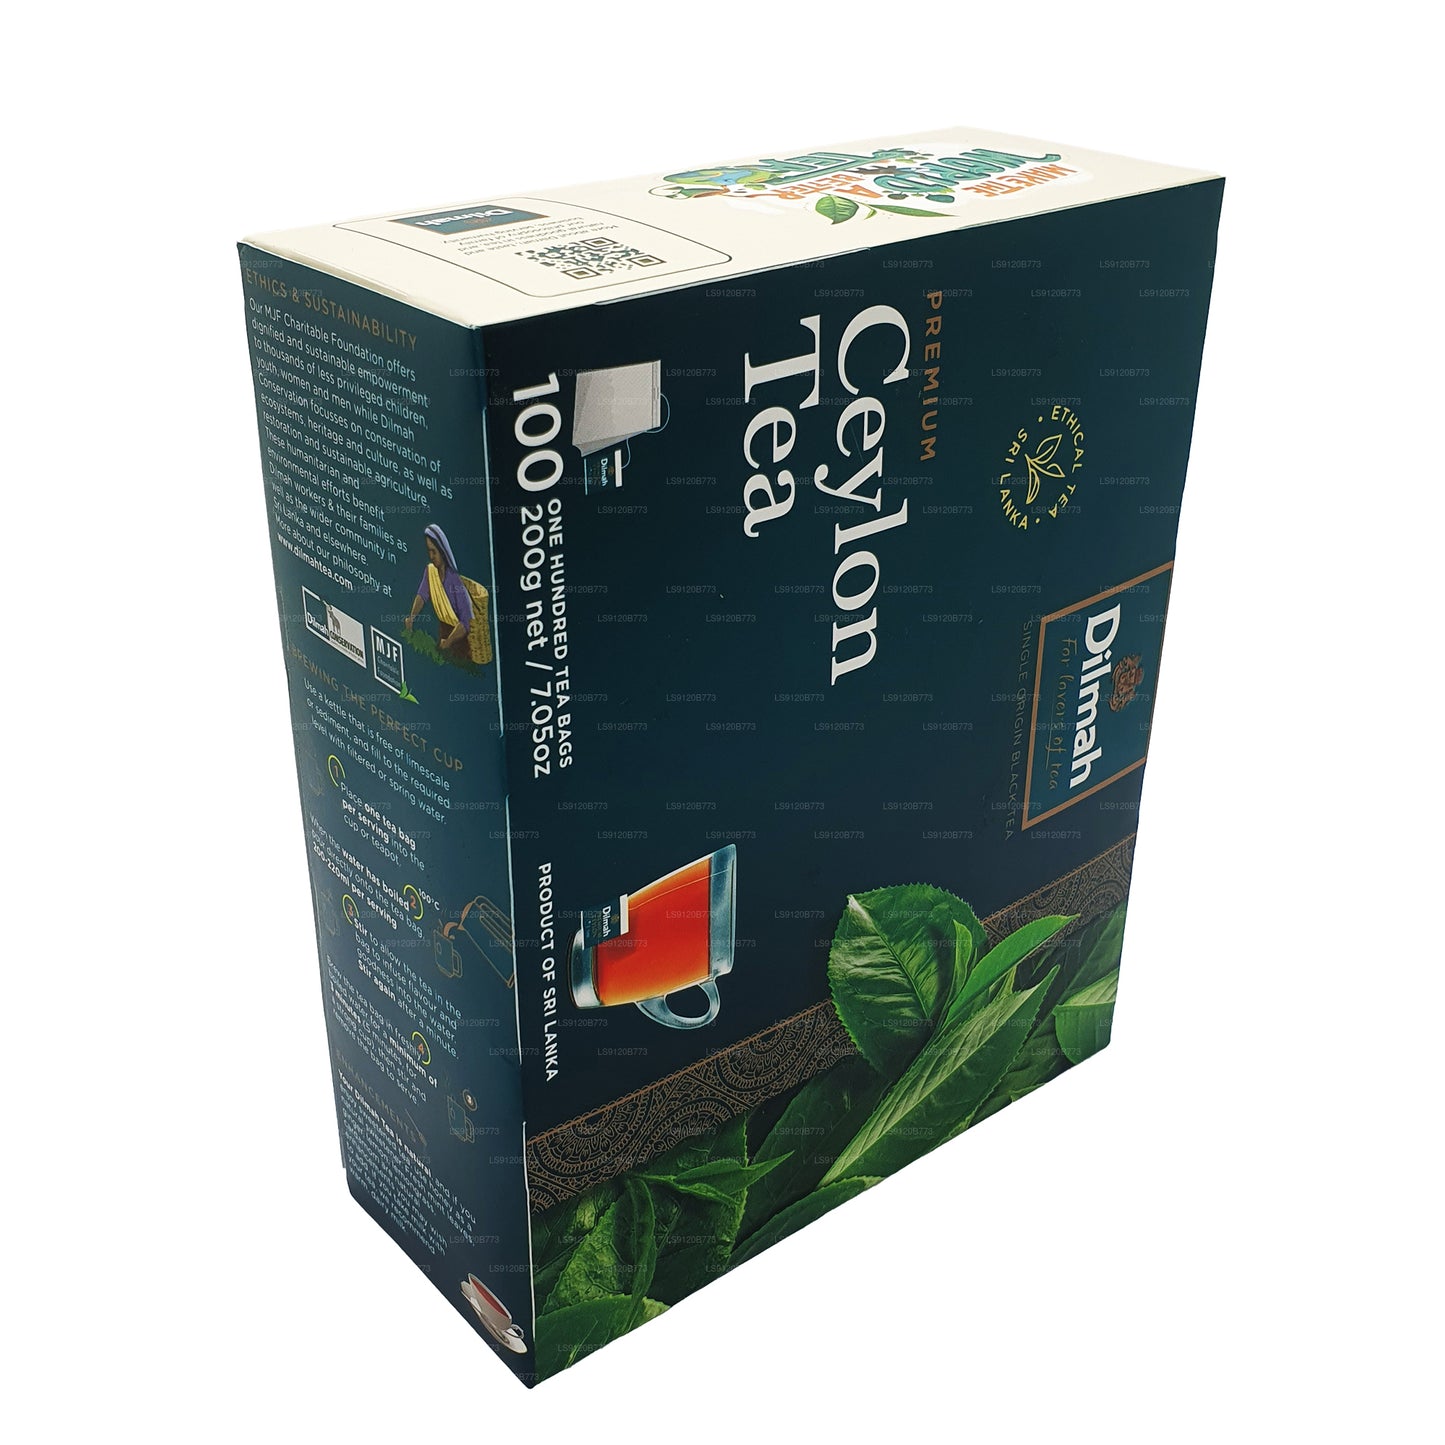 Dilmah Premium Ceylon Tea Bags